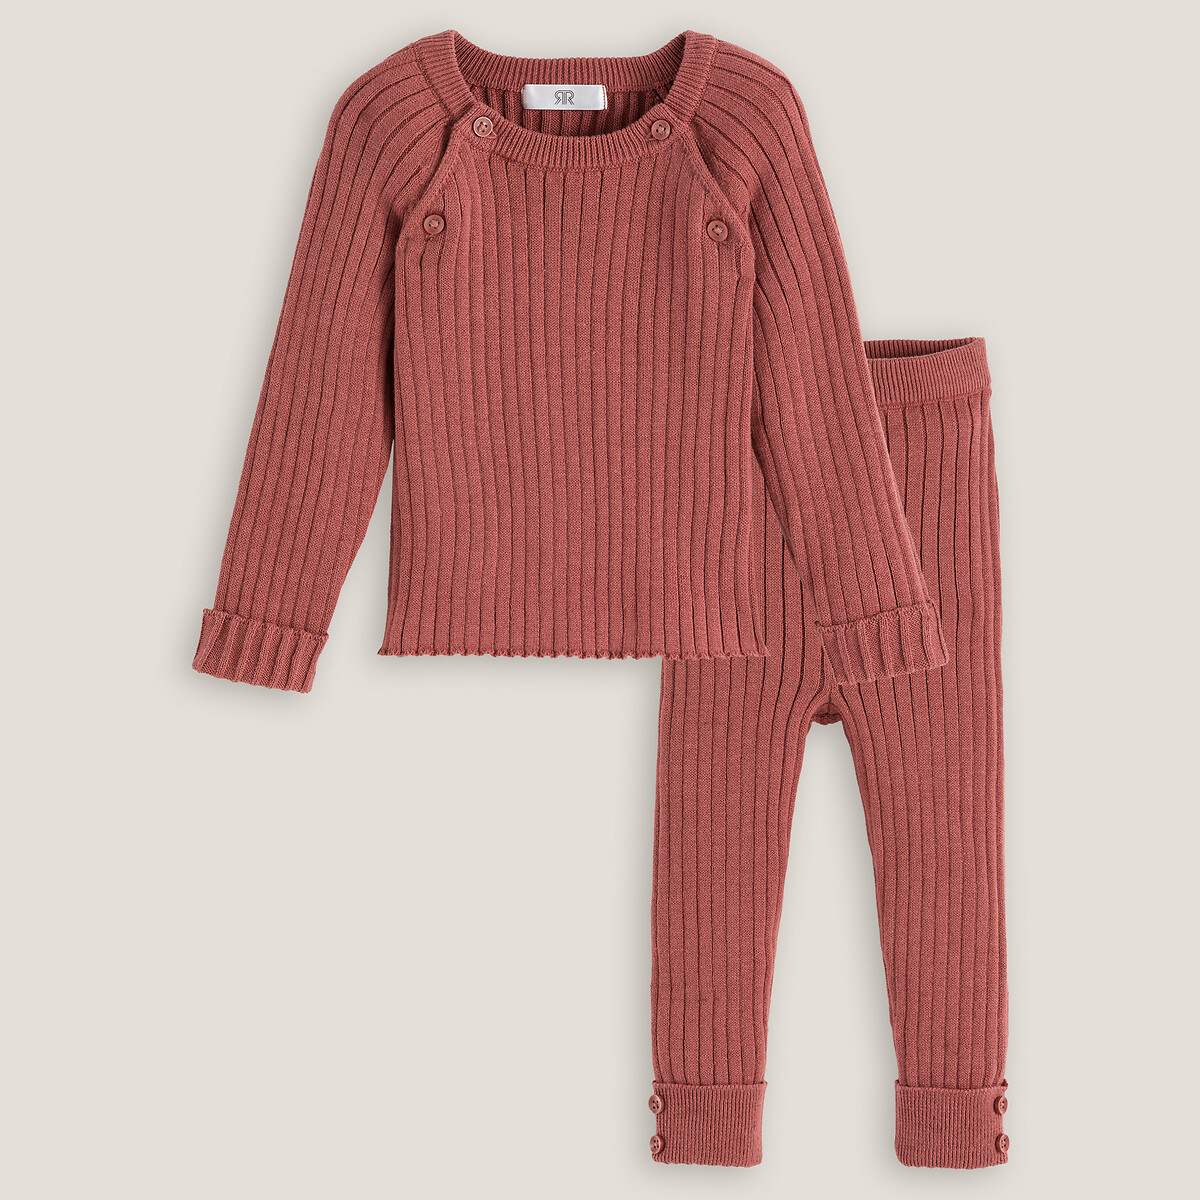 Комплект из 2 вещей пуловер LA REDOUTE COLLECTIONS леггинсы из трикотажа 1 мес. - 54 см розовый, размер 1